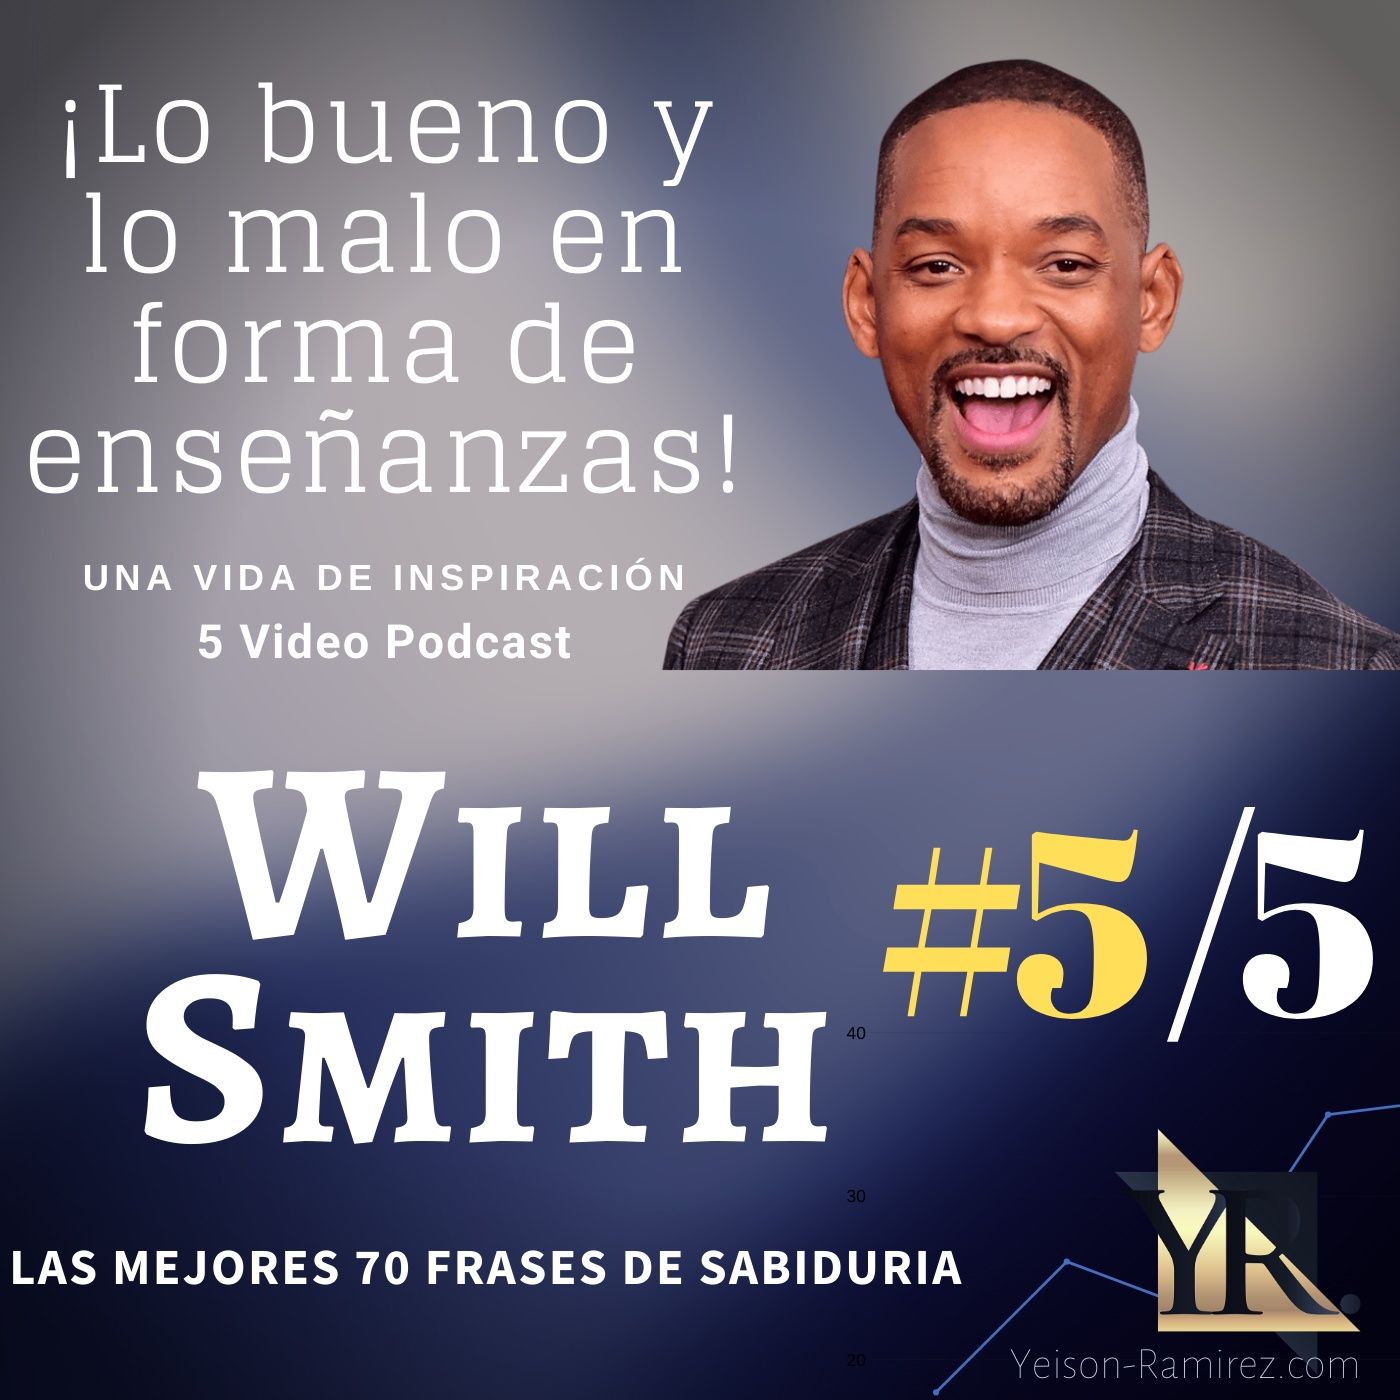 #5/5 de los 70 consejos de la vida de Will Smith